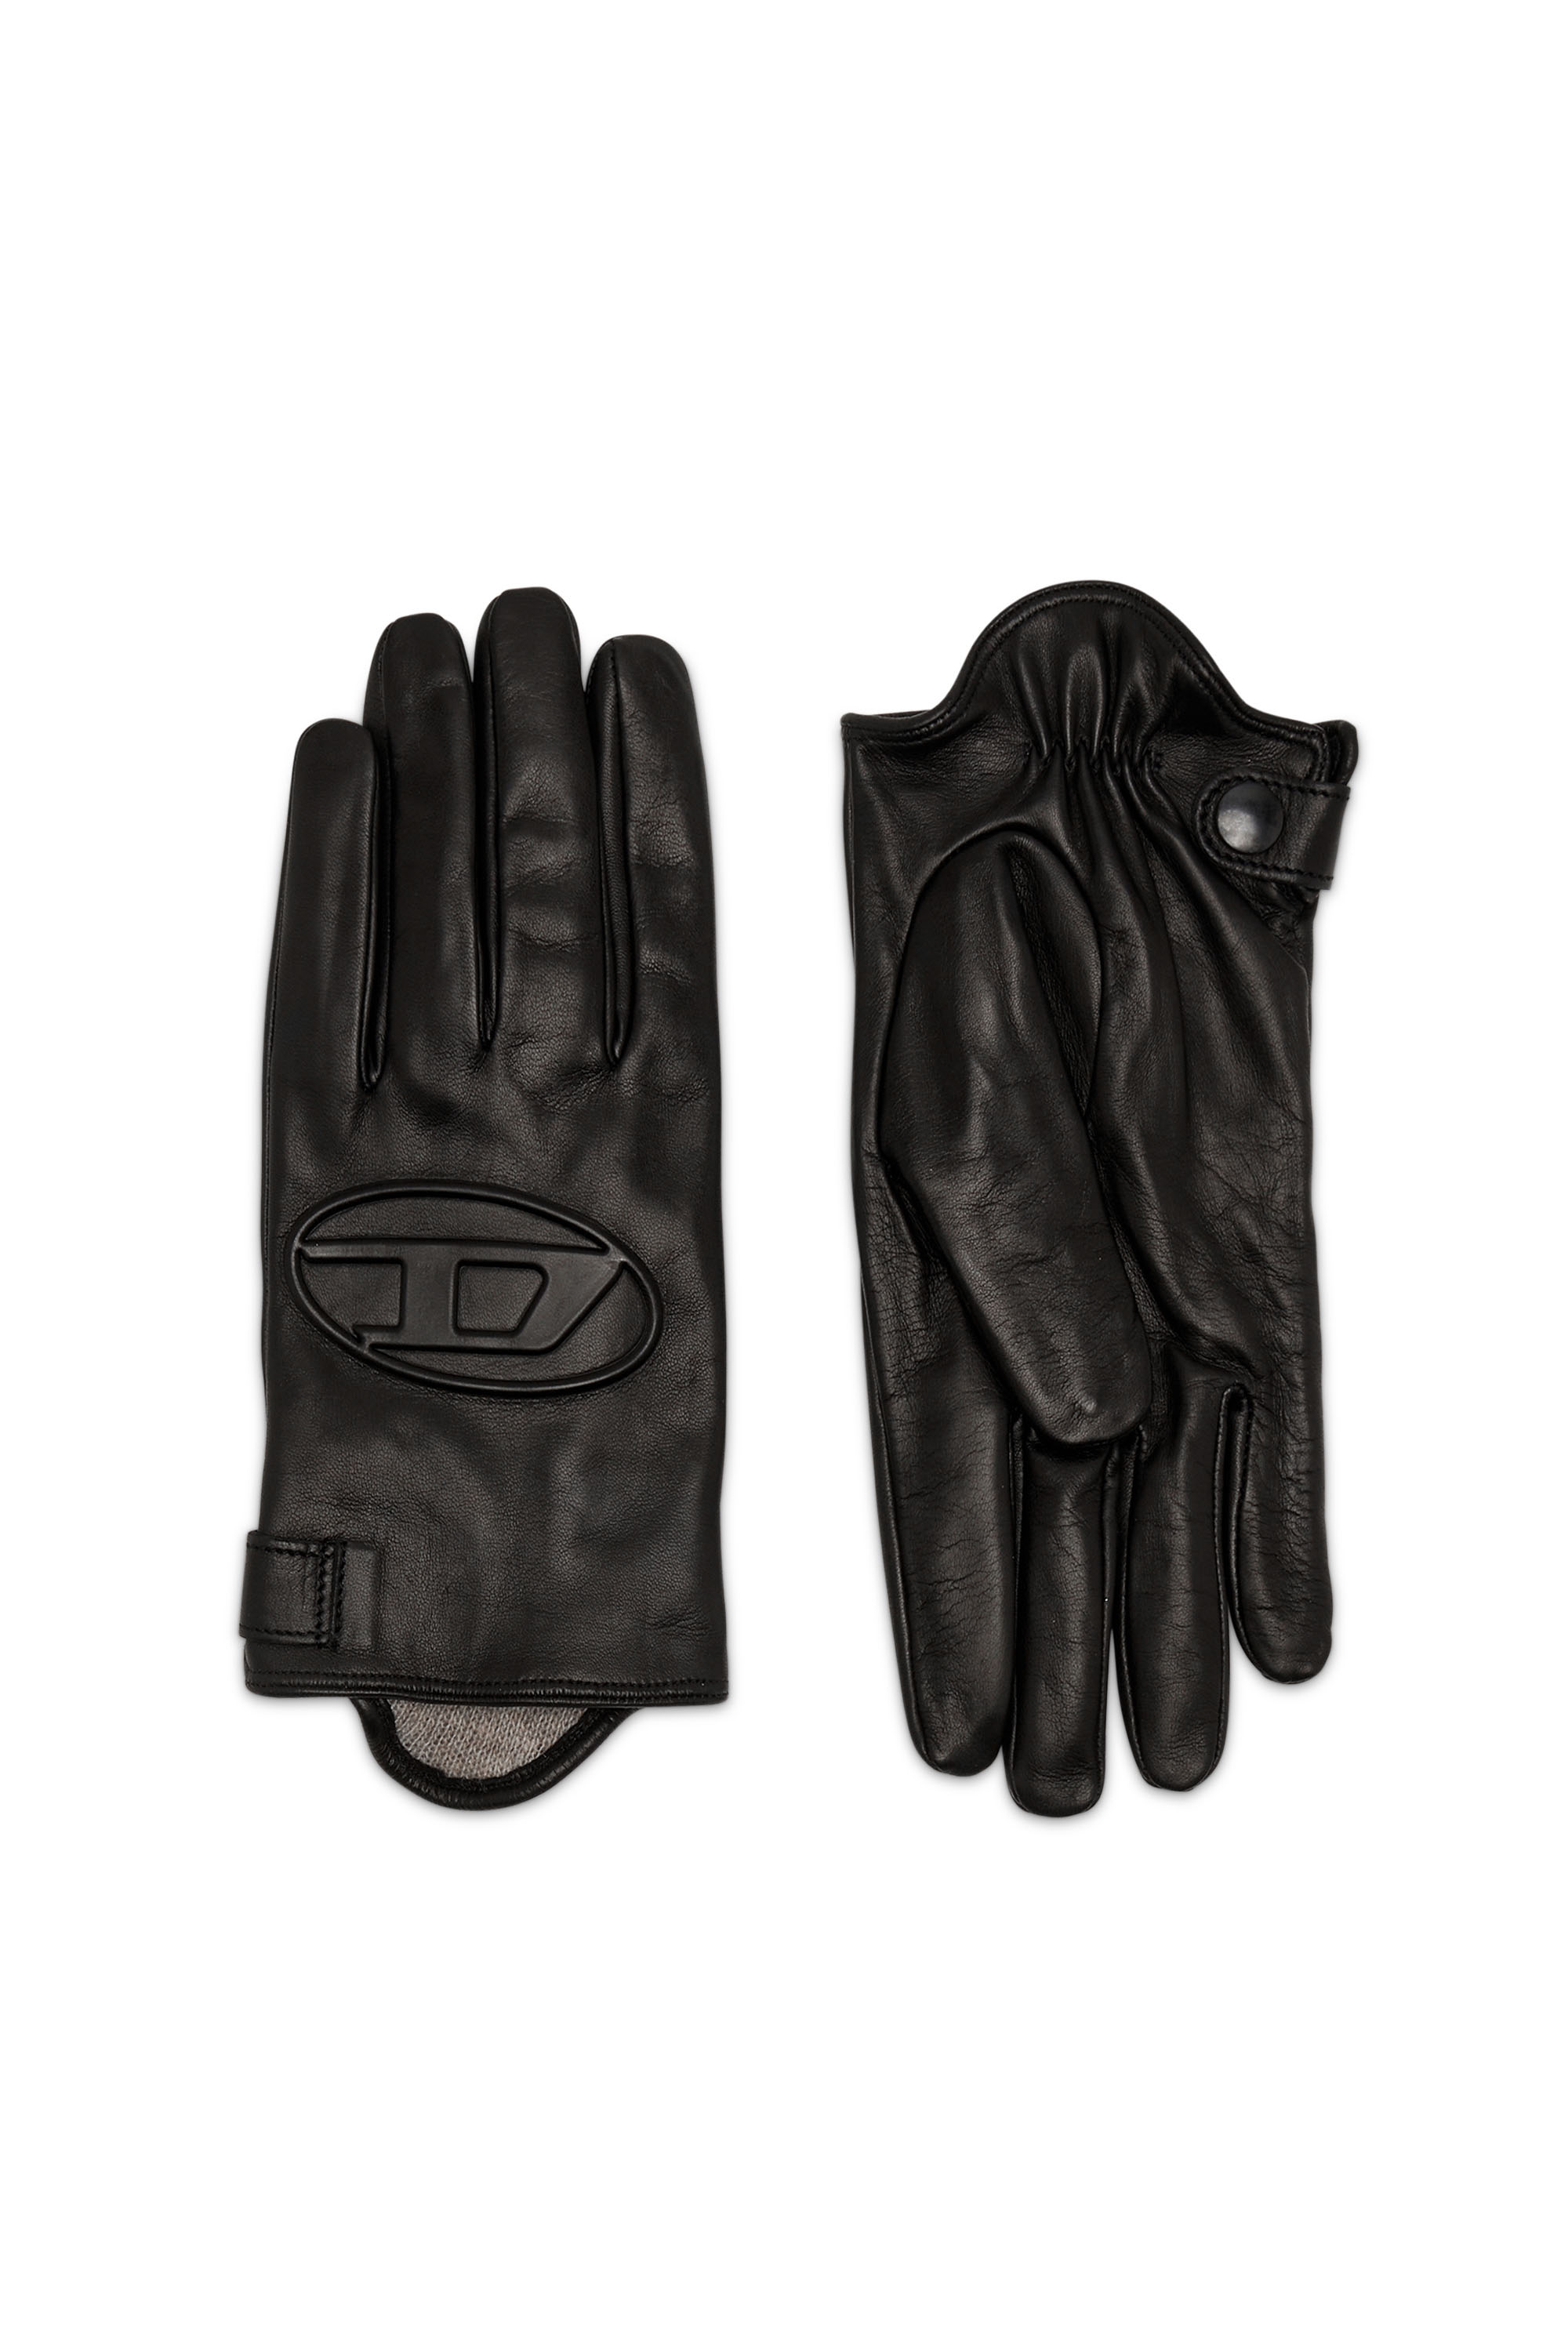 G-REIES, Black - Gloves